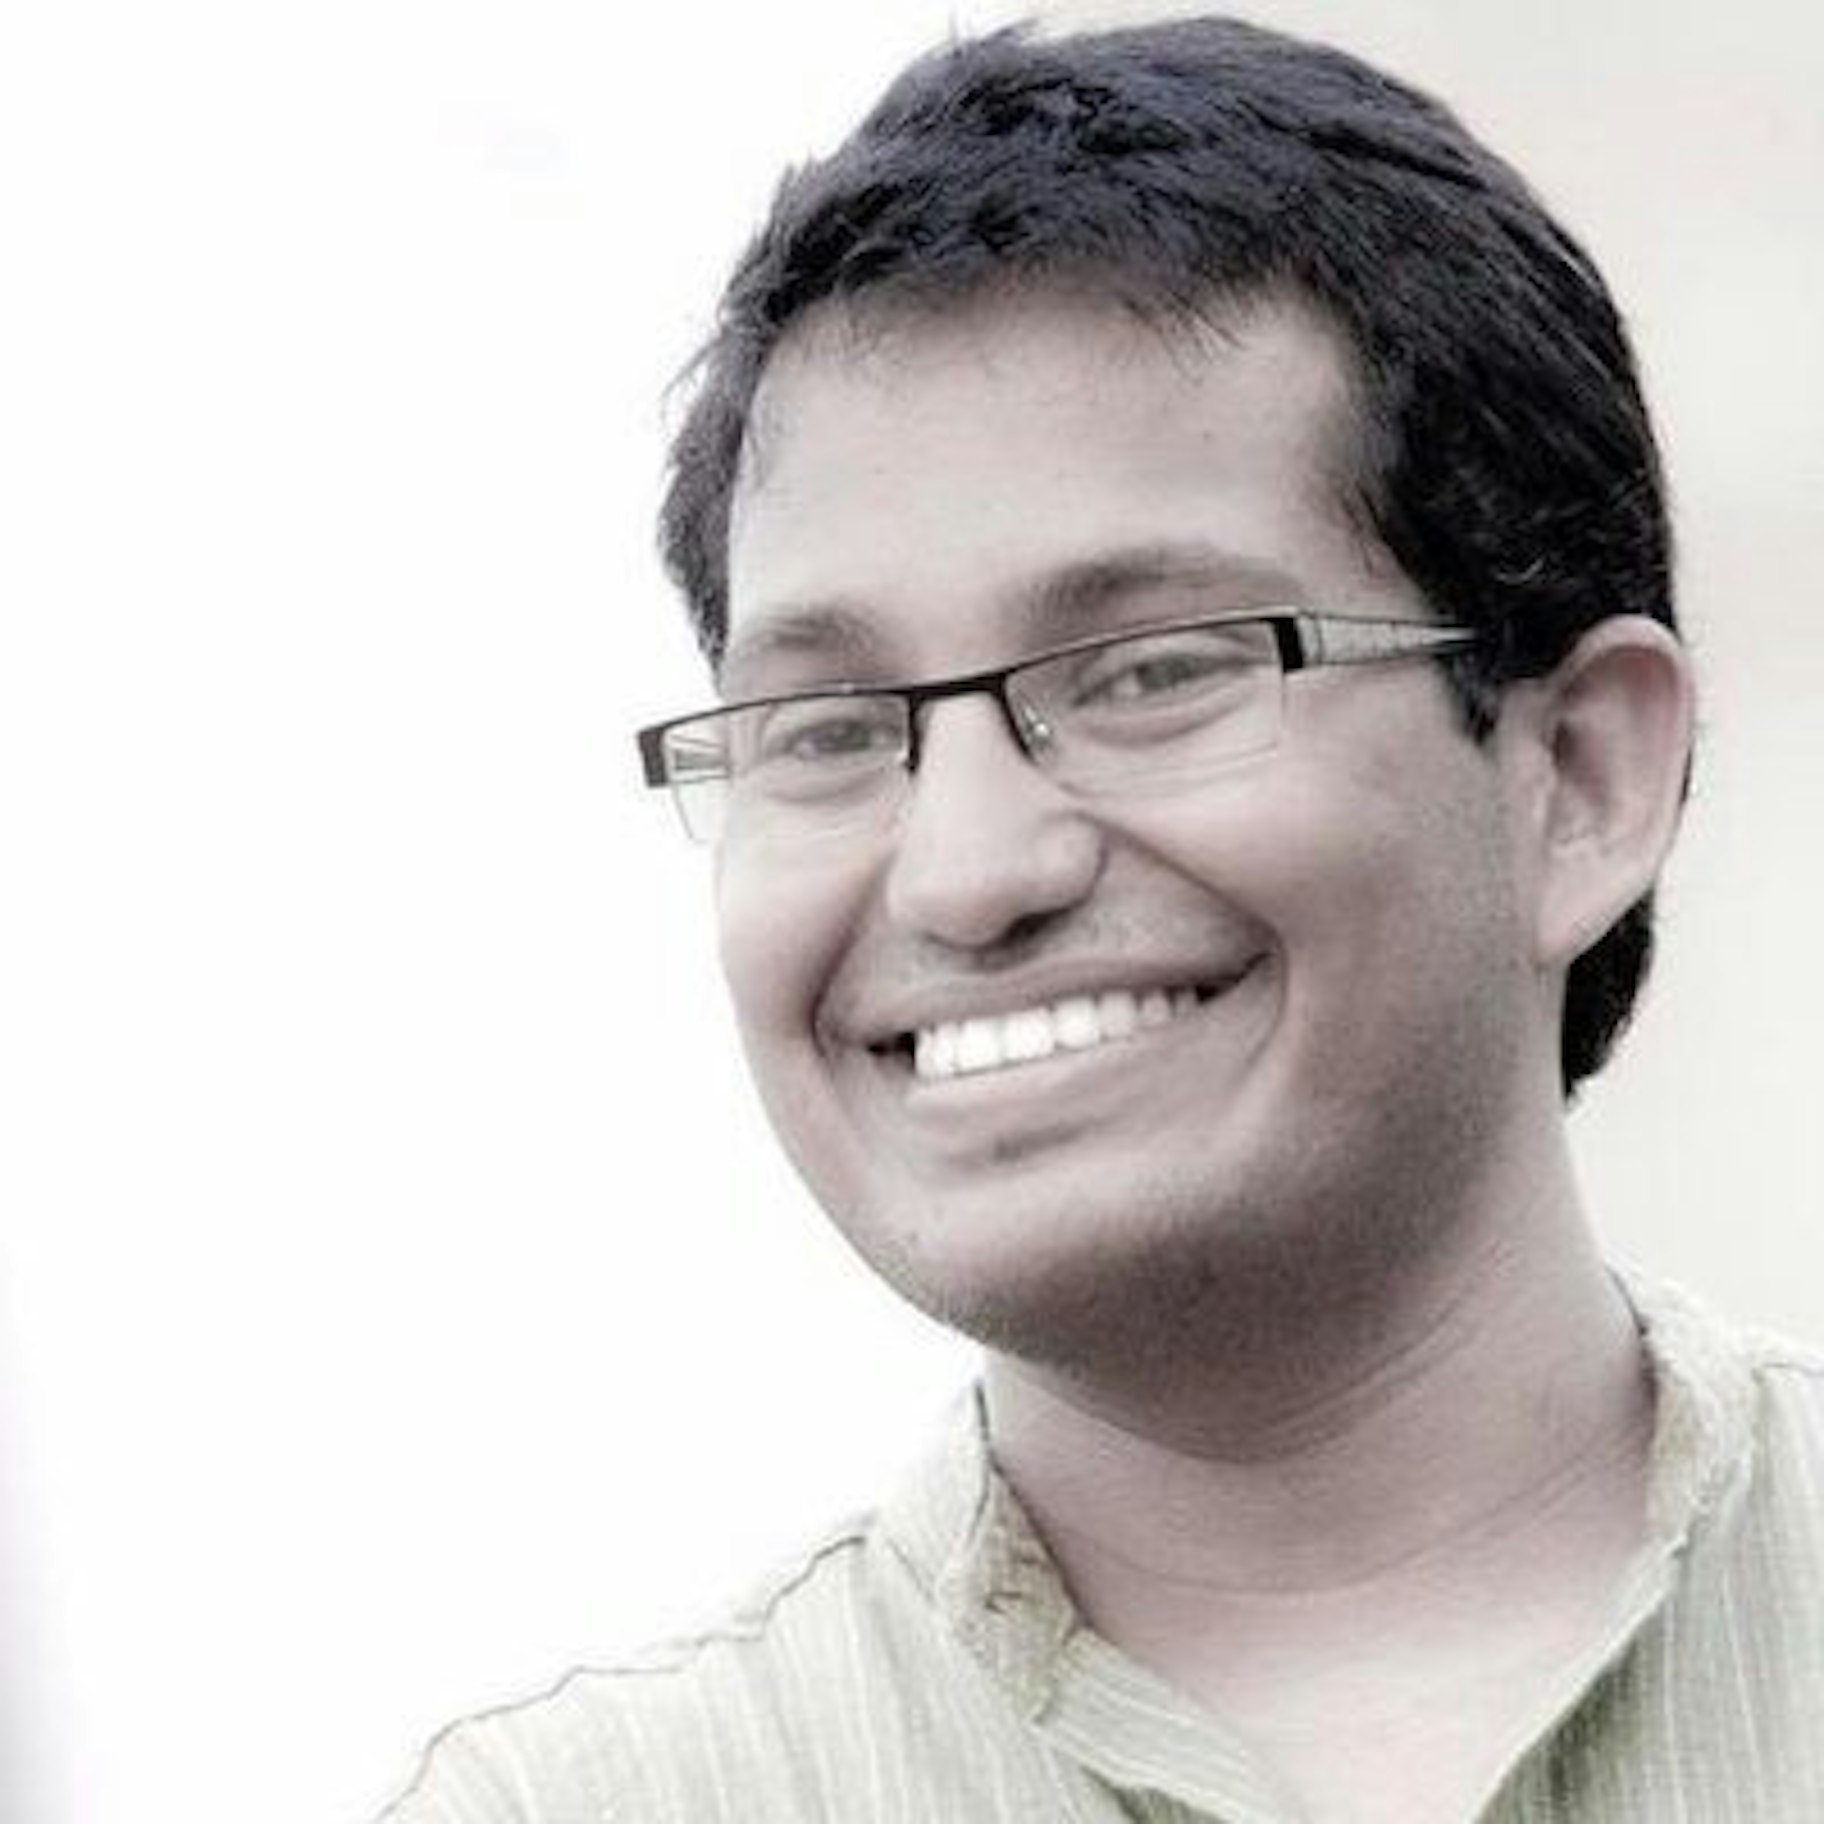 Sumit Bansal tjener passiv indkomst